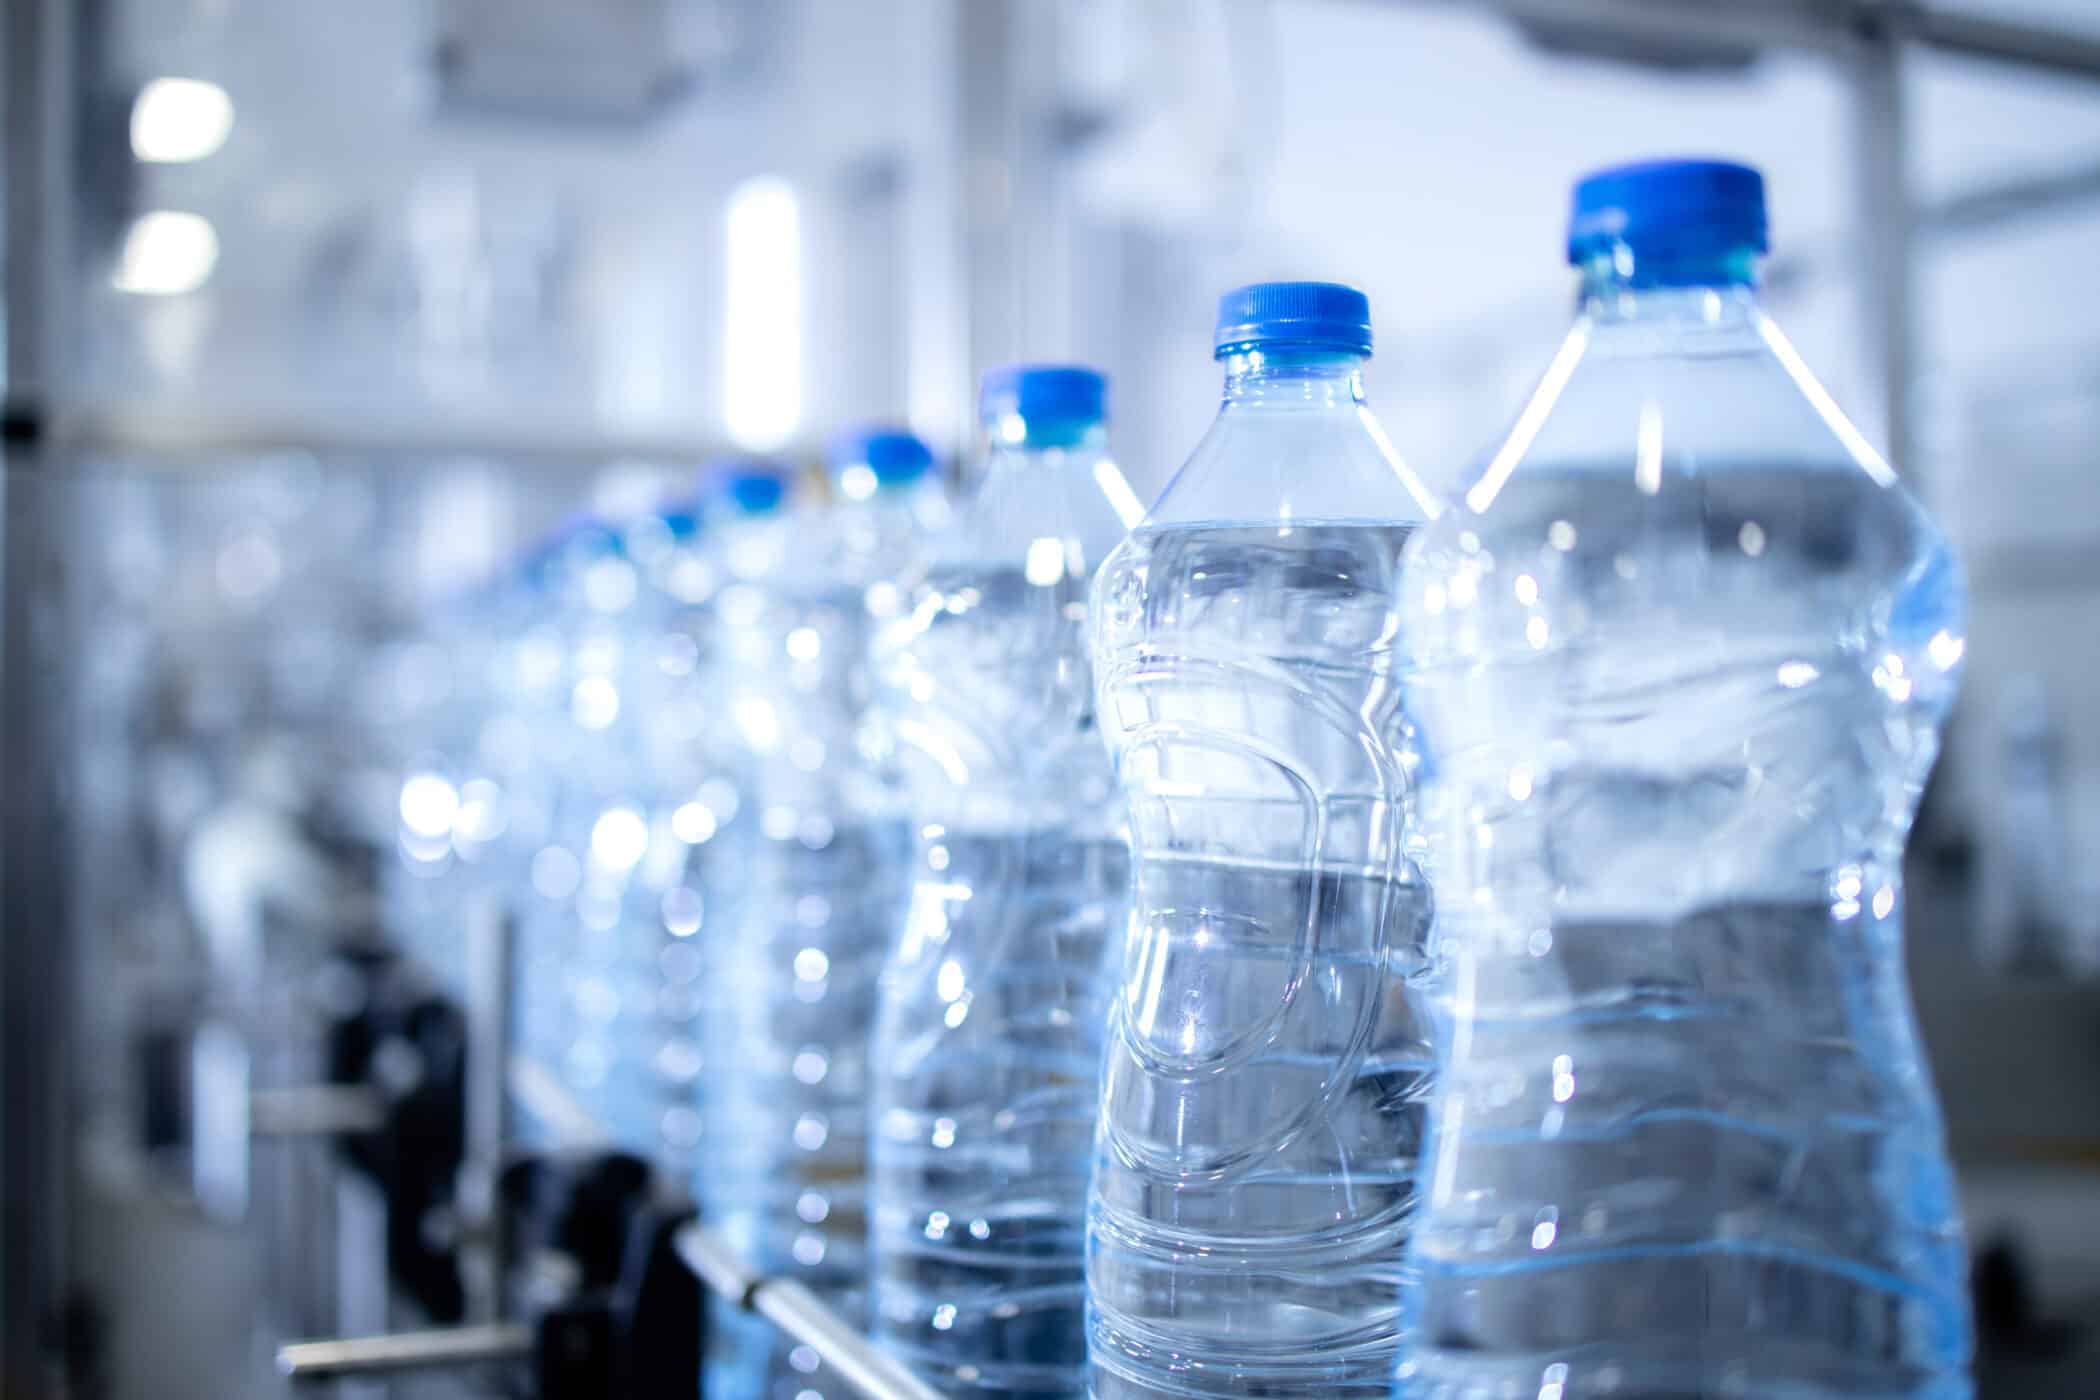 ペットボトル飲料水にはこれまで考えられていた量の100倍以上のプラスチック片が含まれていることが判明